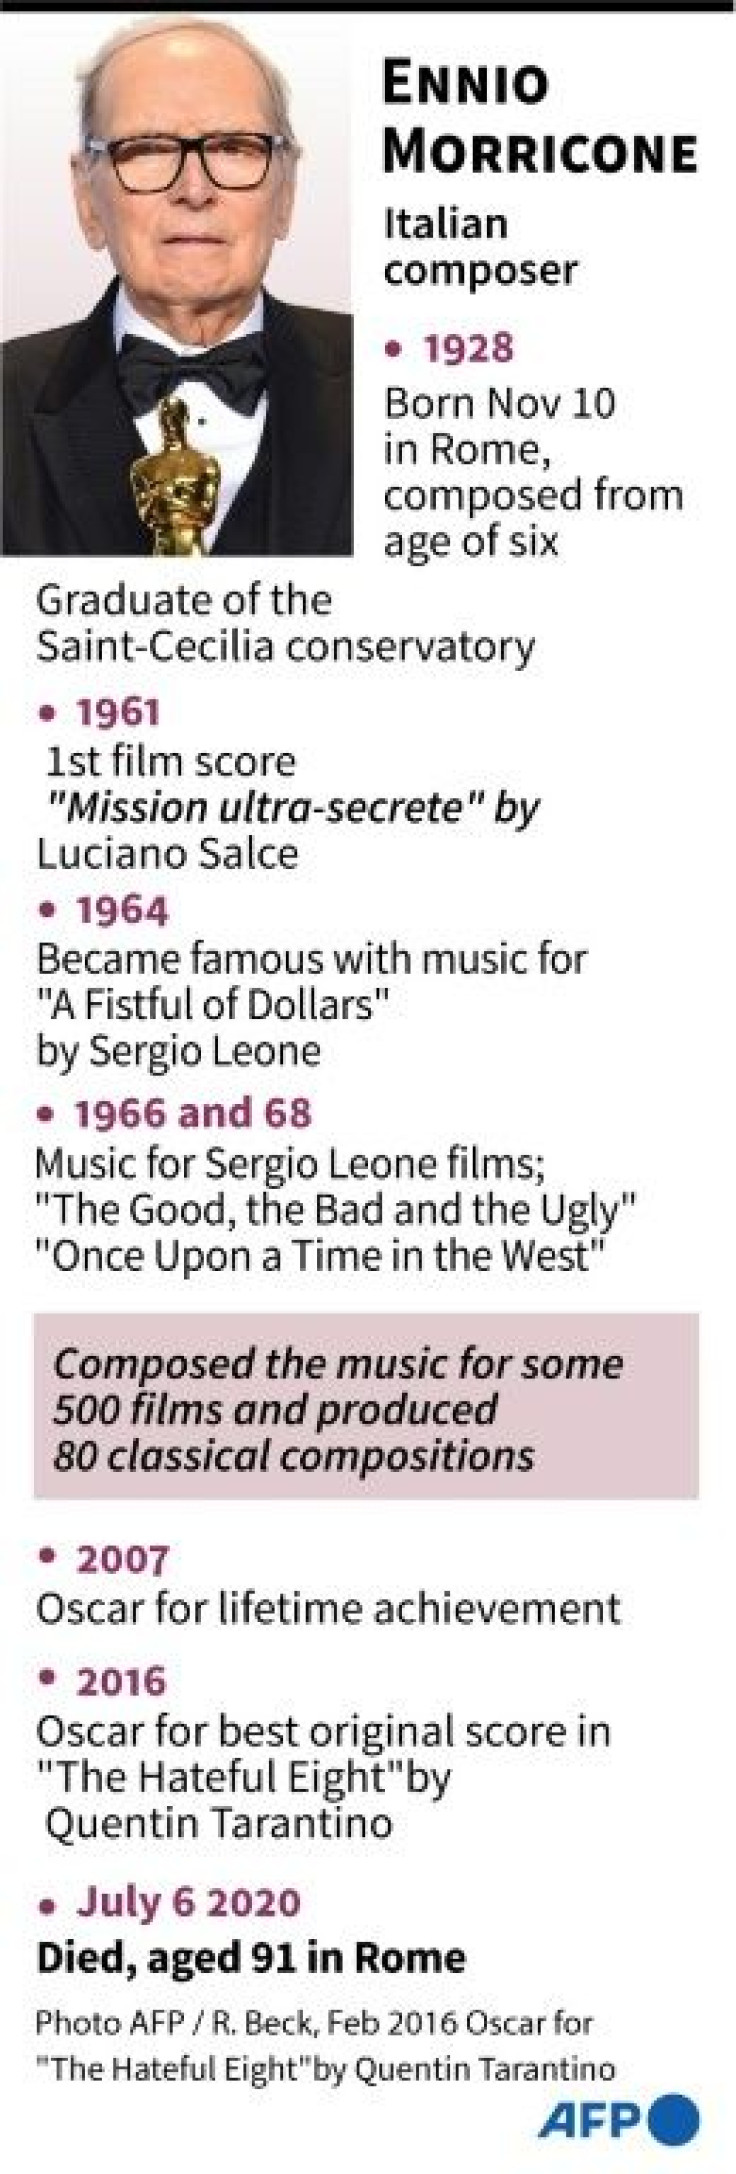 Profile of Italian composer Ennio Morricone